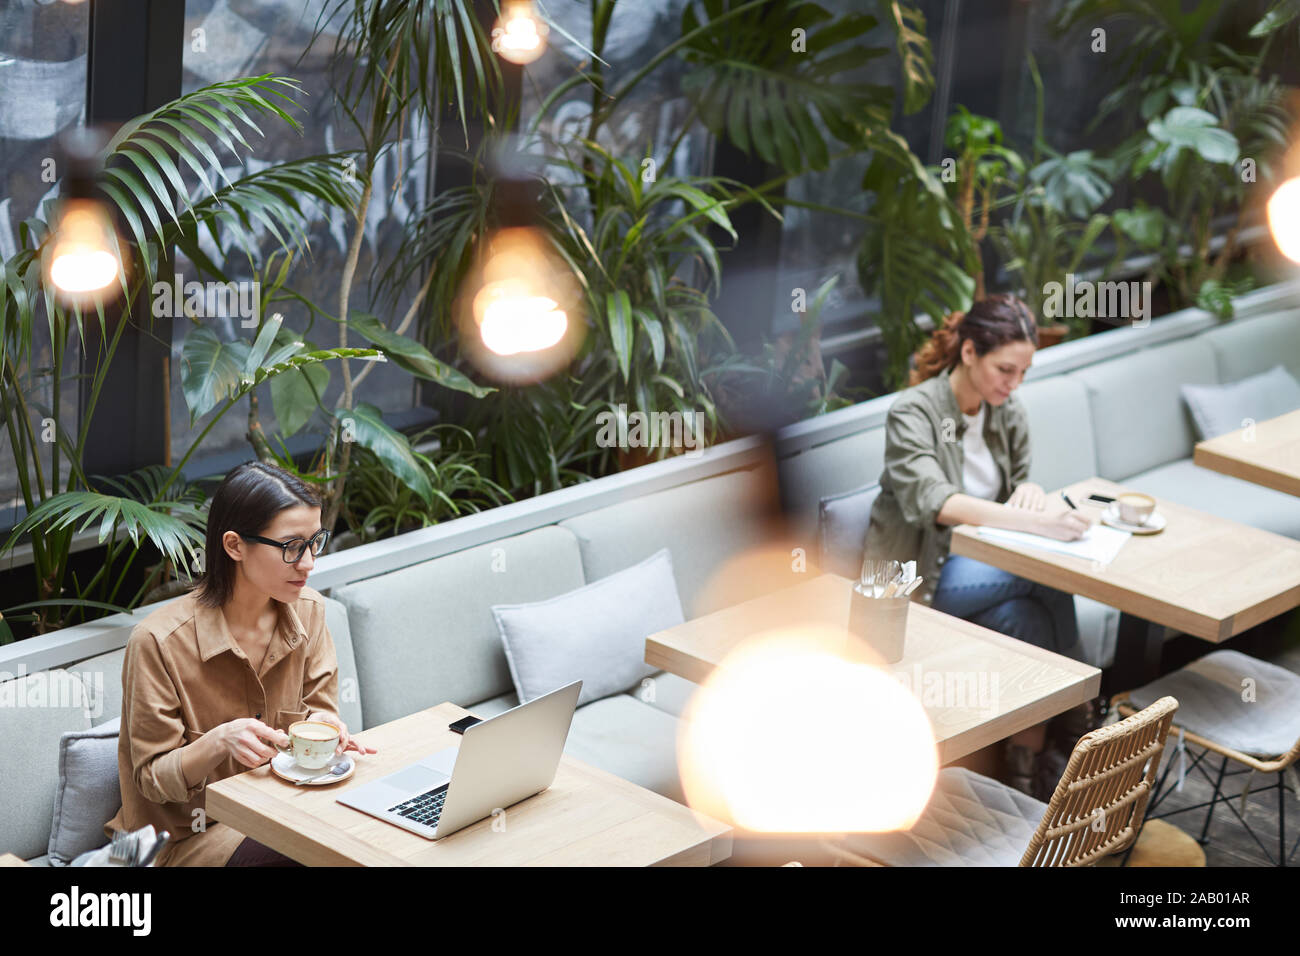 Angolo alto ritratto di due giovani donne che lavorano in tabelle separate in cafe presso la terrazza esterna decorata con piante, spazio di copia Foto Stock